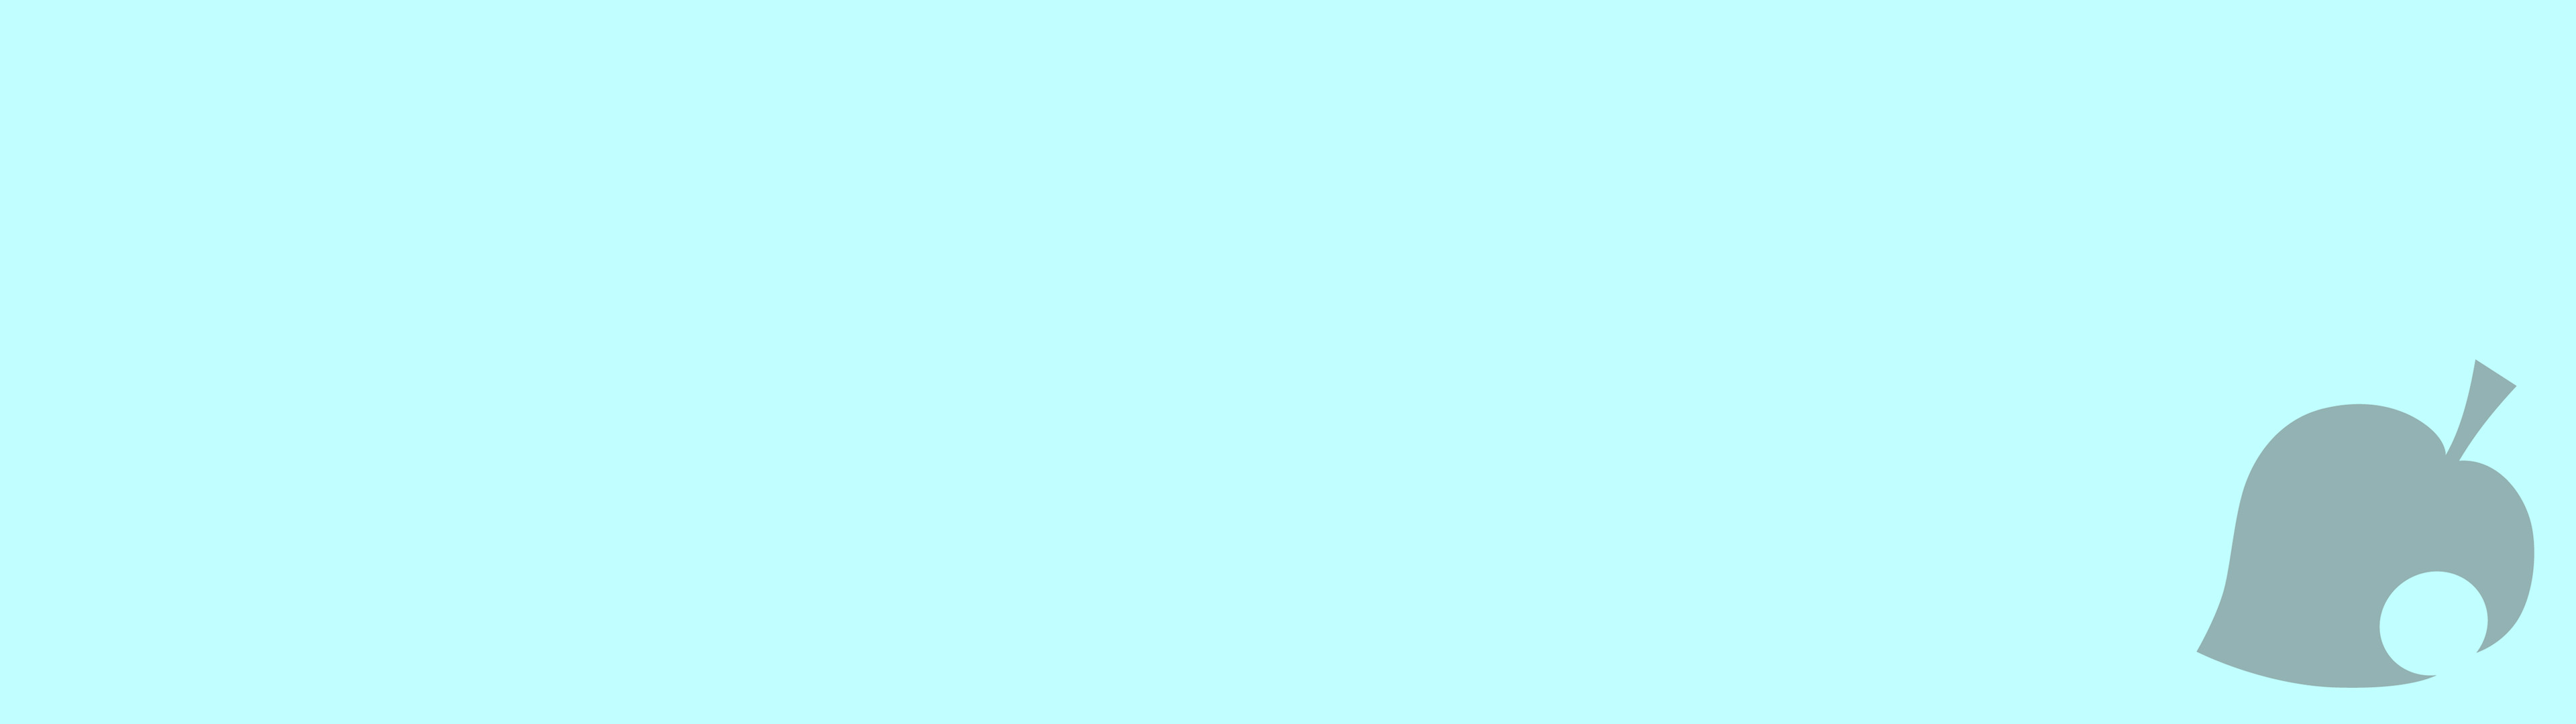 3840x1080 General  Animal Crossing New Leaf Animal Crossing New Leaf logo  minimalism blue light blue dual